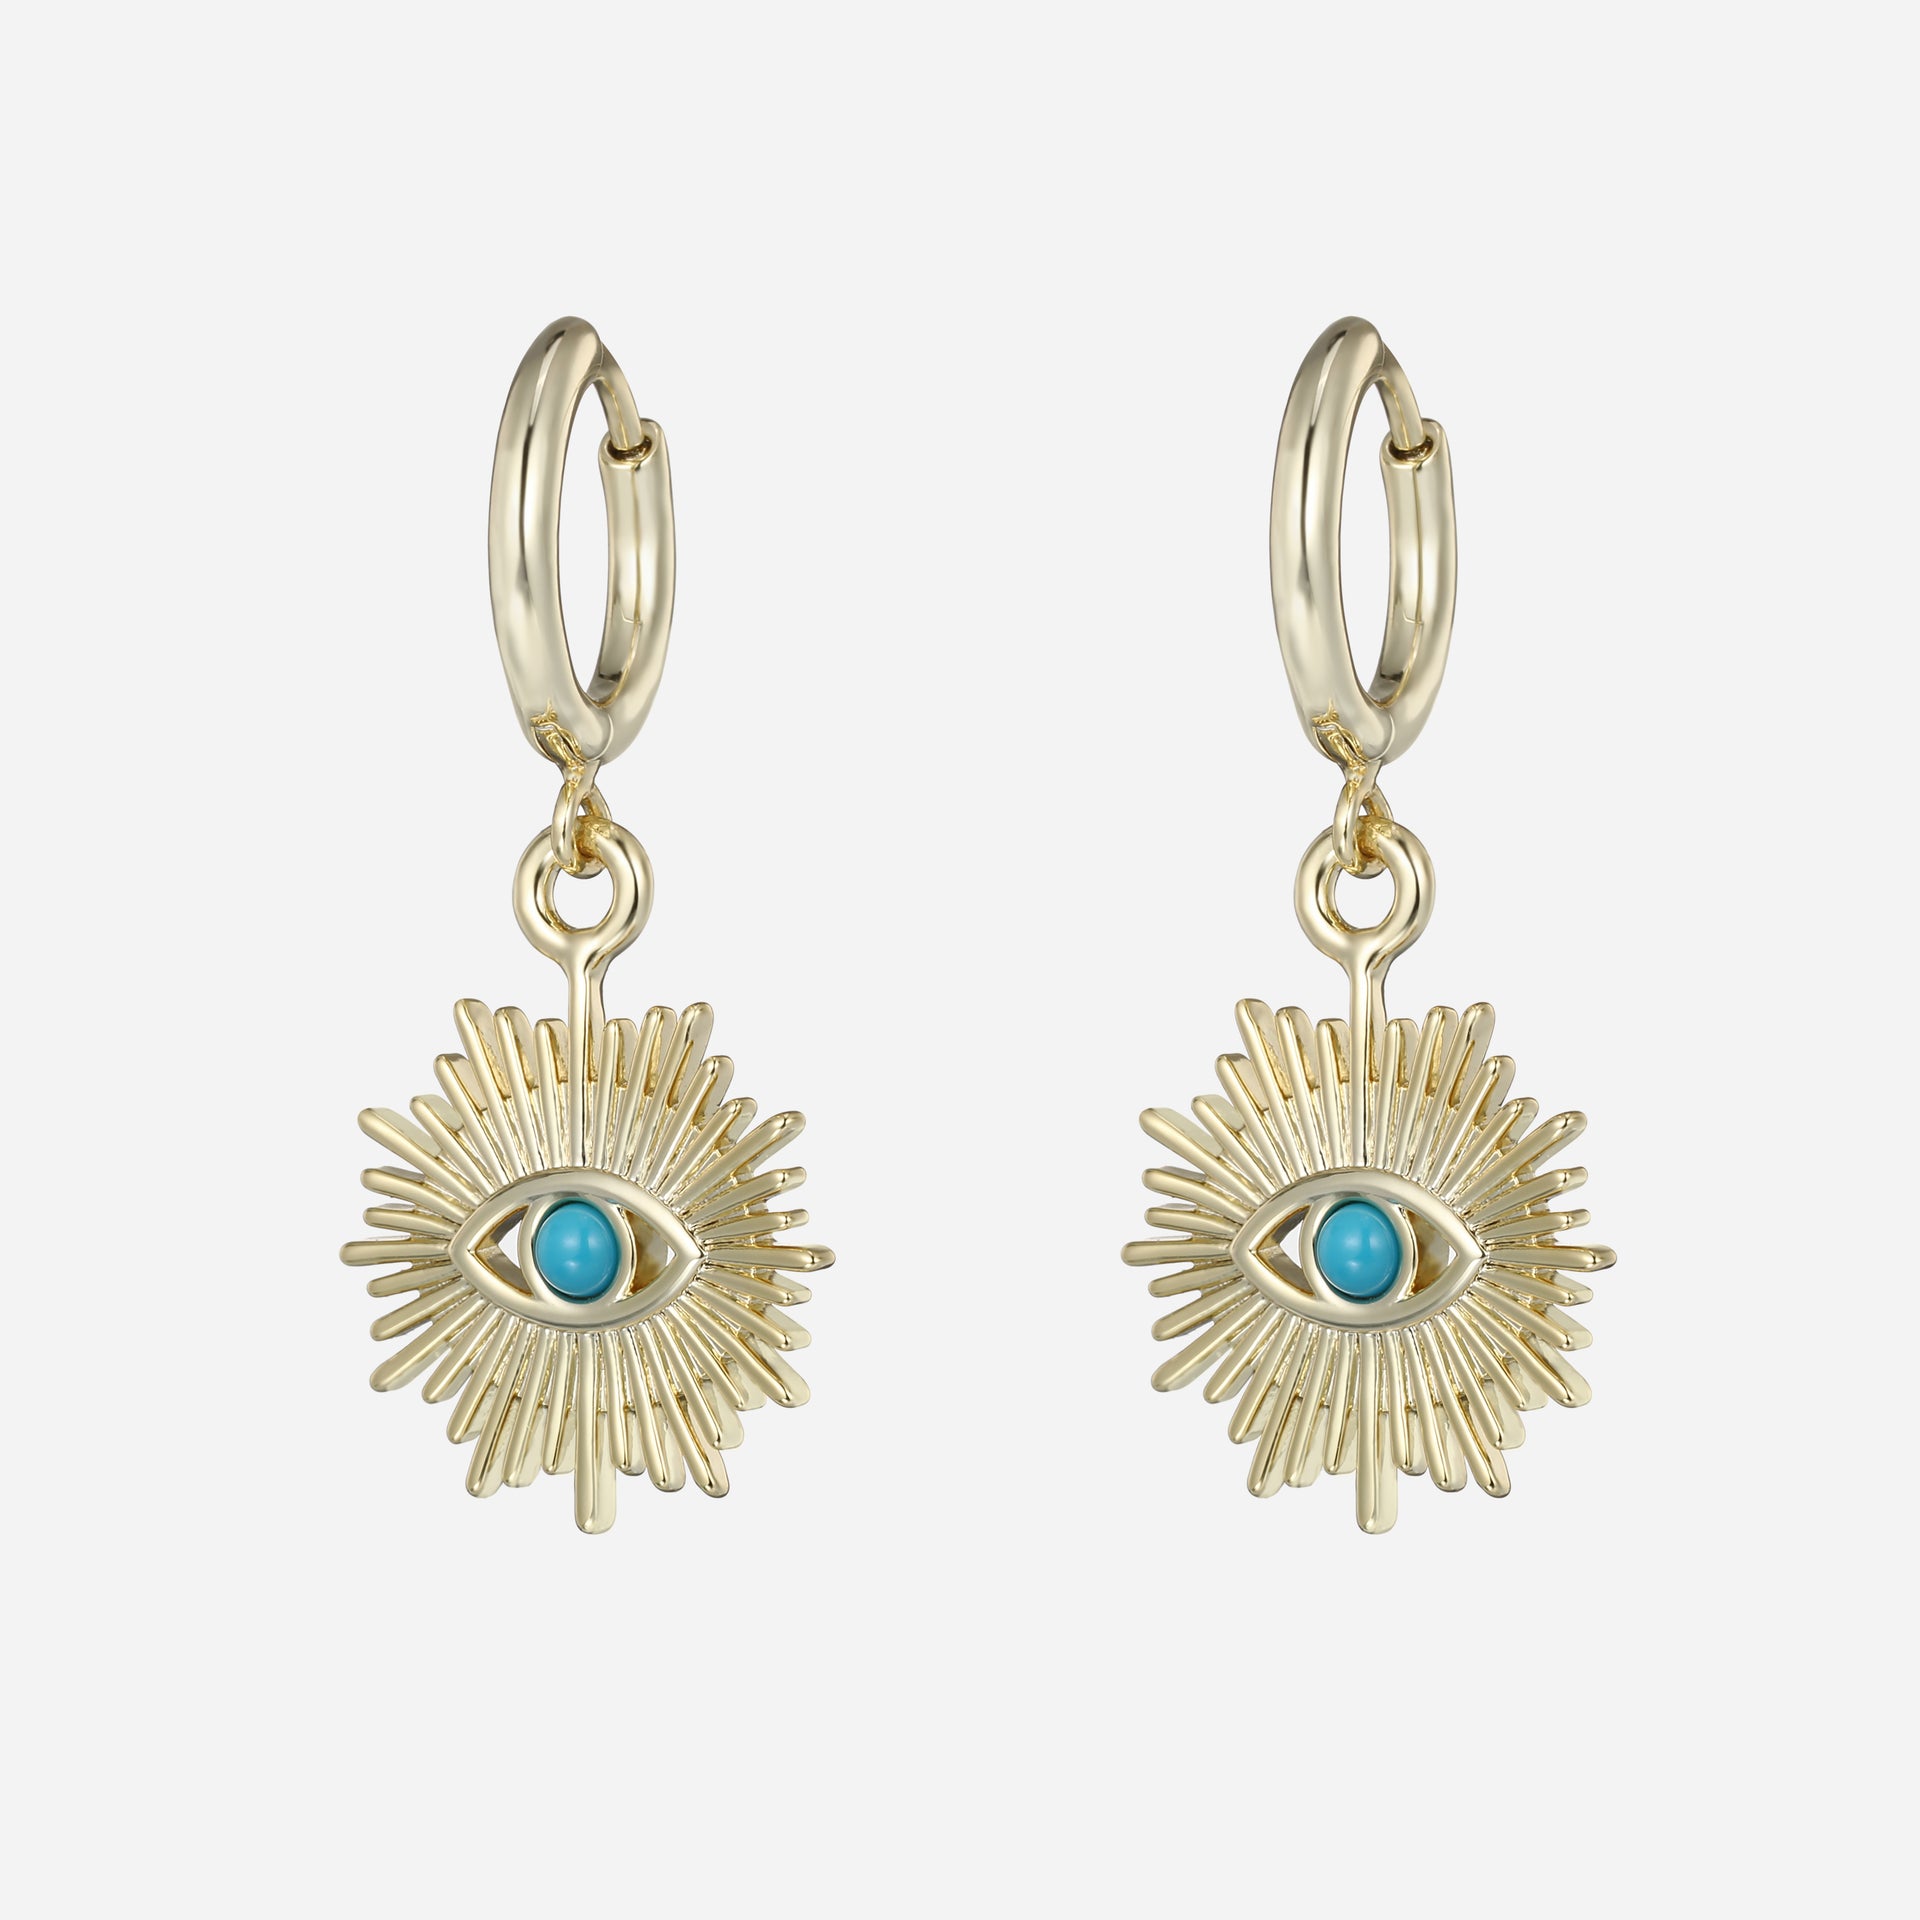  Greek Products : Greek Gold Jewelry : 14k Gold Post  Earrings w/ Evil Eye (6mm)